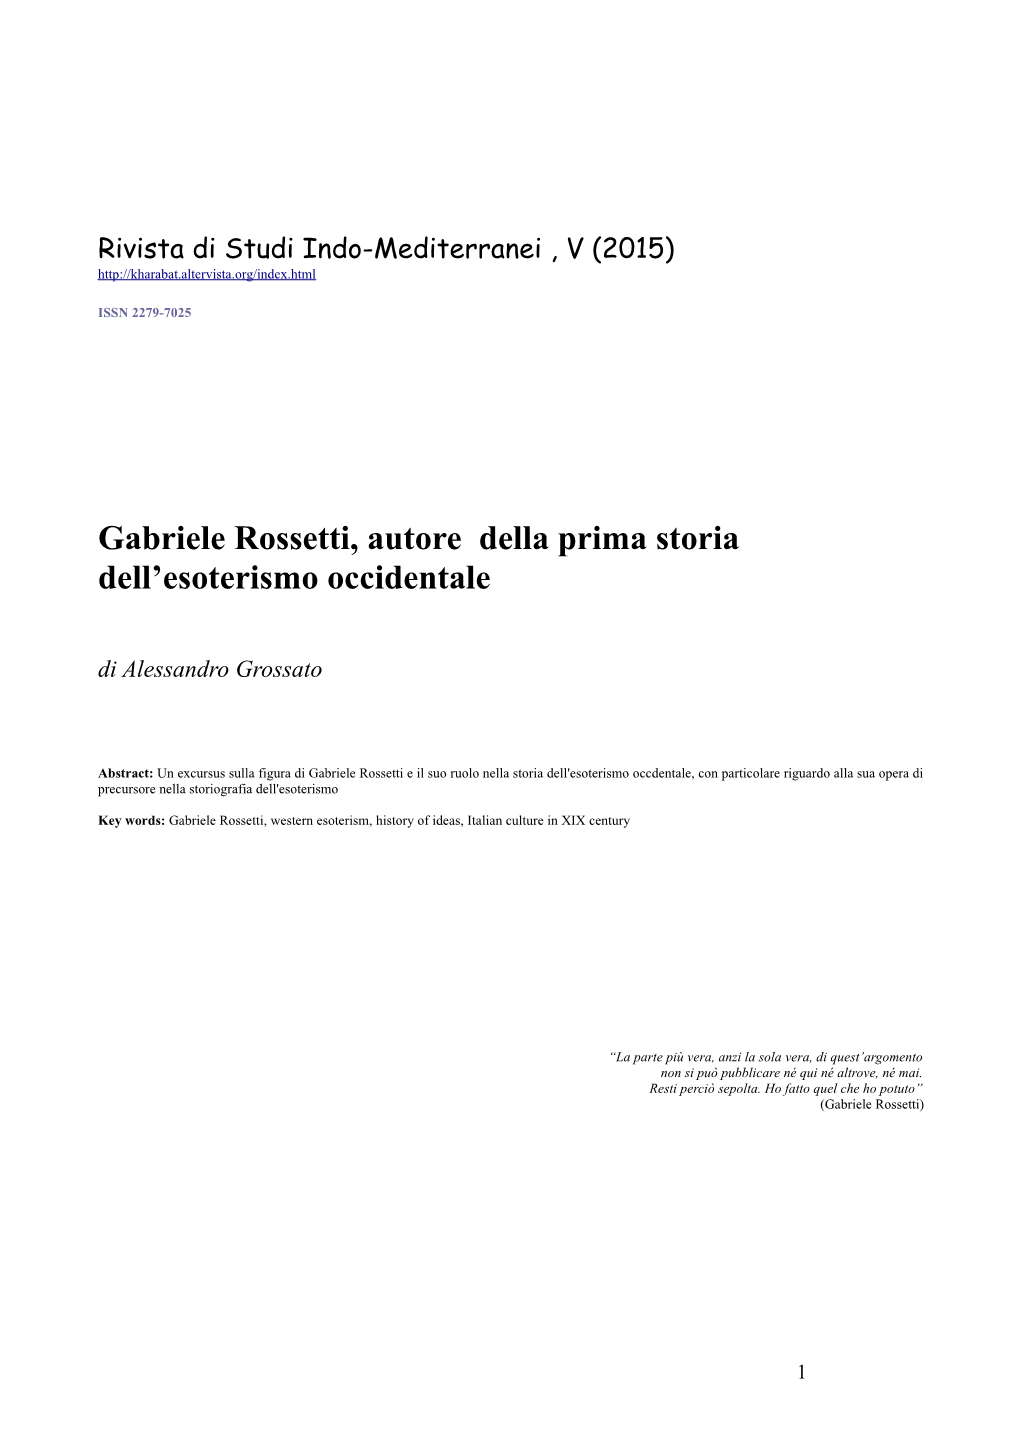 Gabriele Rossetti, Autore Della Prima Storia Dell’Esoterismo Occidentale Di Alessandro Grossato